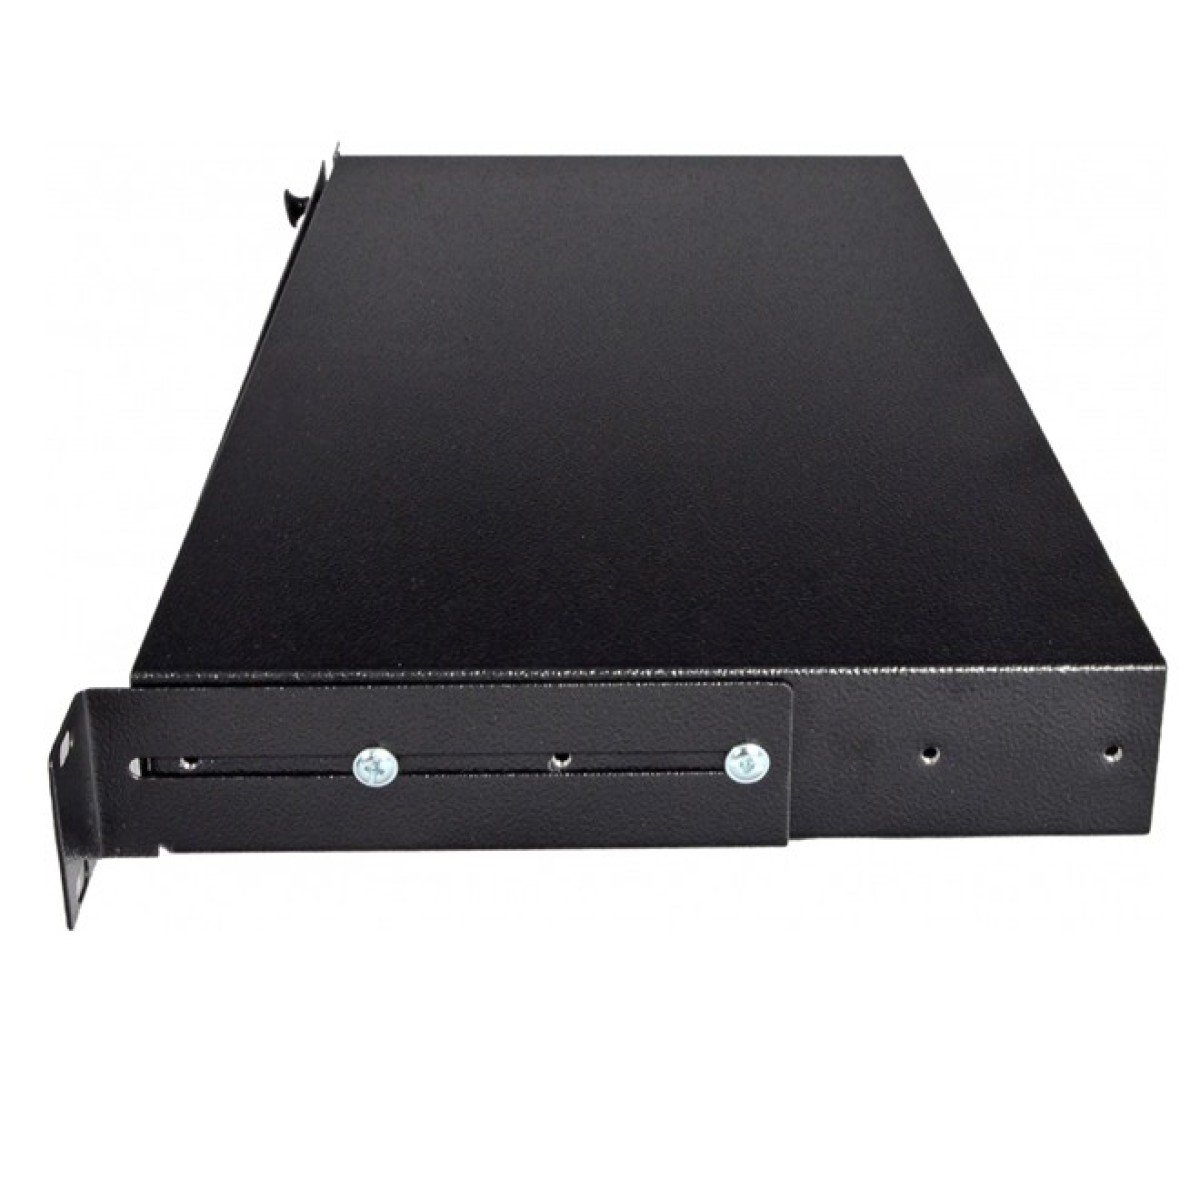 ОDF панель 24 порта под 12 адаптеров SC Duplex/LC Quad, пустая, 1U, каб.вводы для 2xPG13.5 + 2xPG11, черная, Украина 98_98.jpg - фото 5